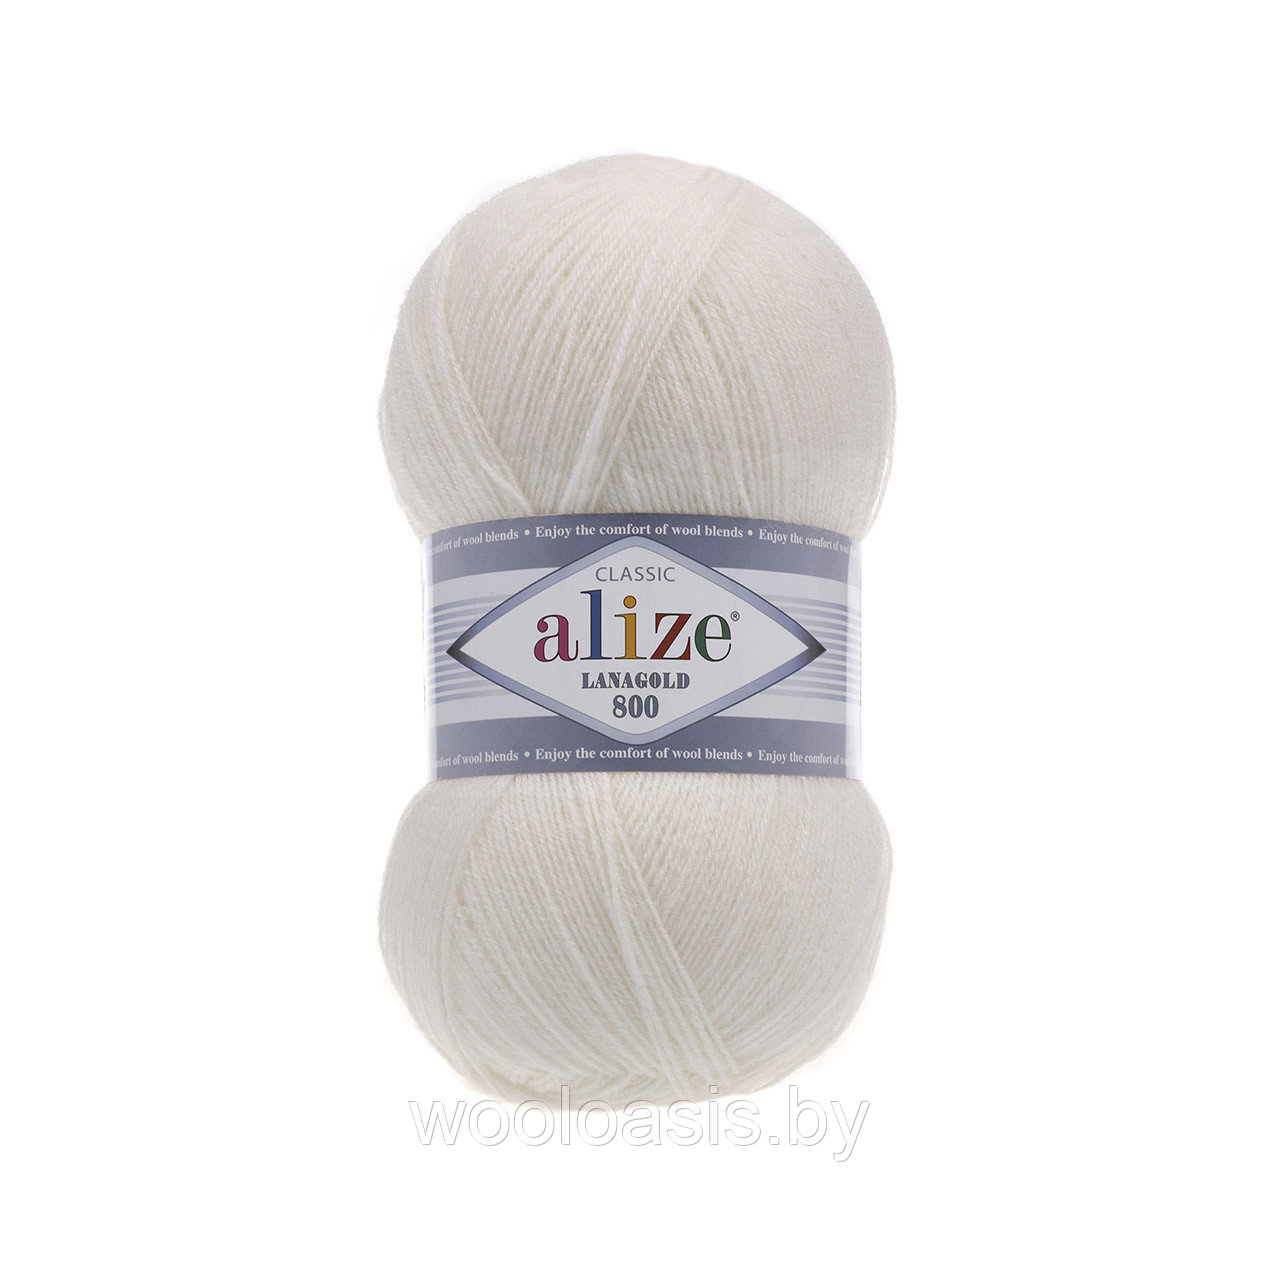 Пряжа Alize Lanagold 800, Ализе Ланаголд 800, турецкая, шерсть с акрилом, для ручного вязания (цвет 450)